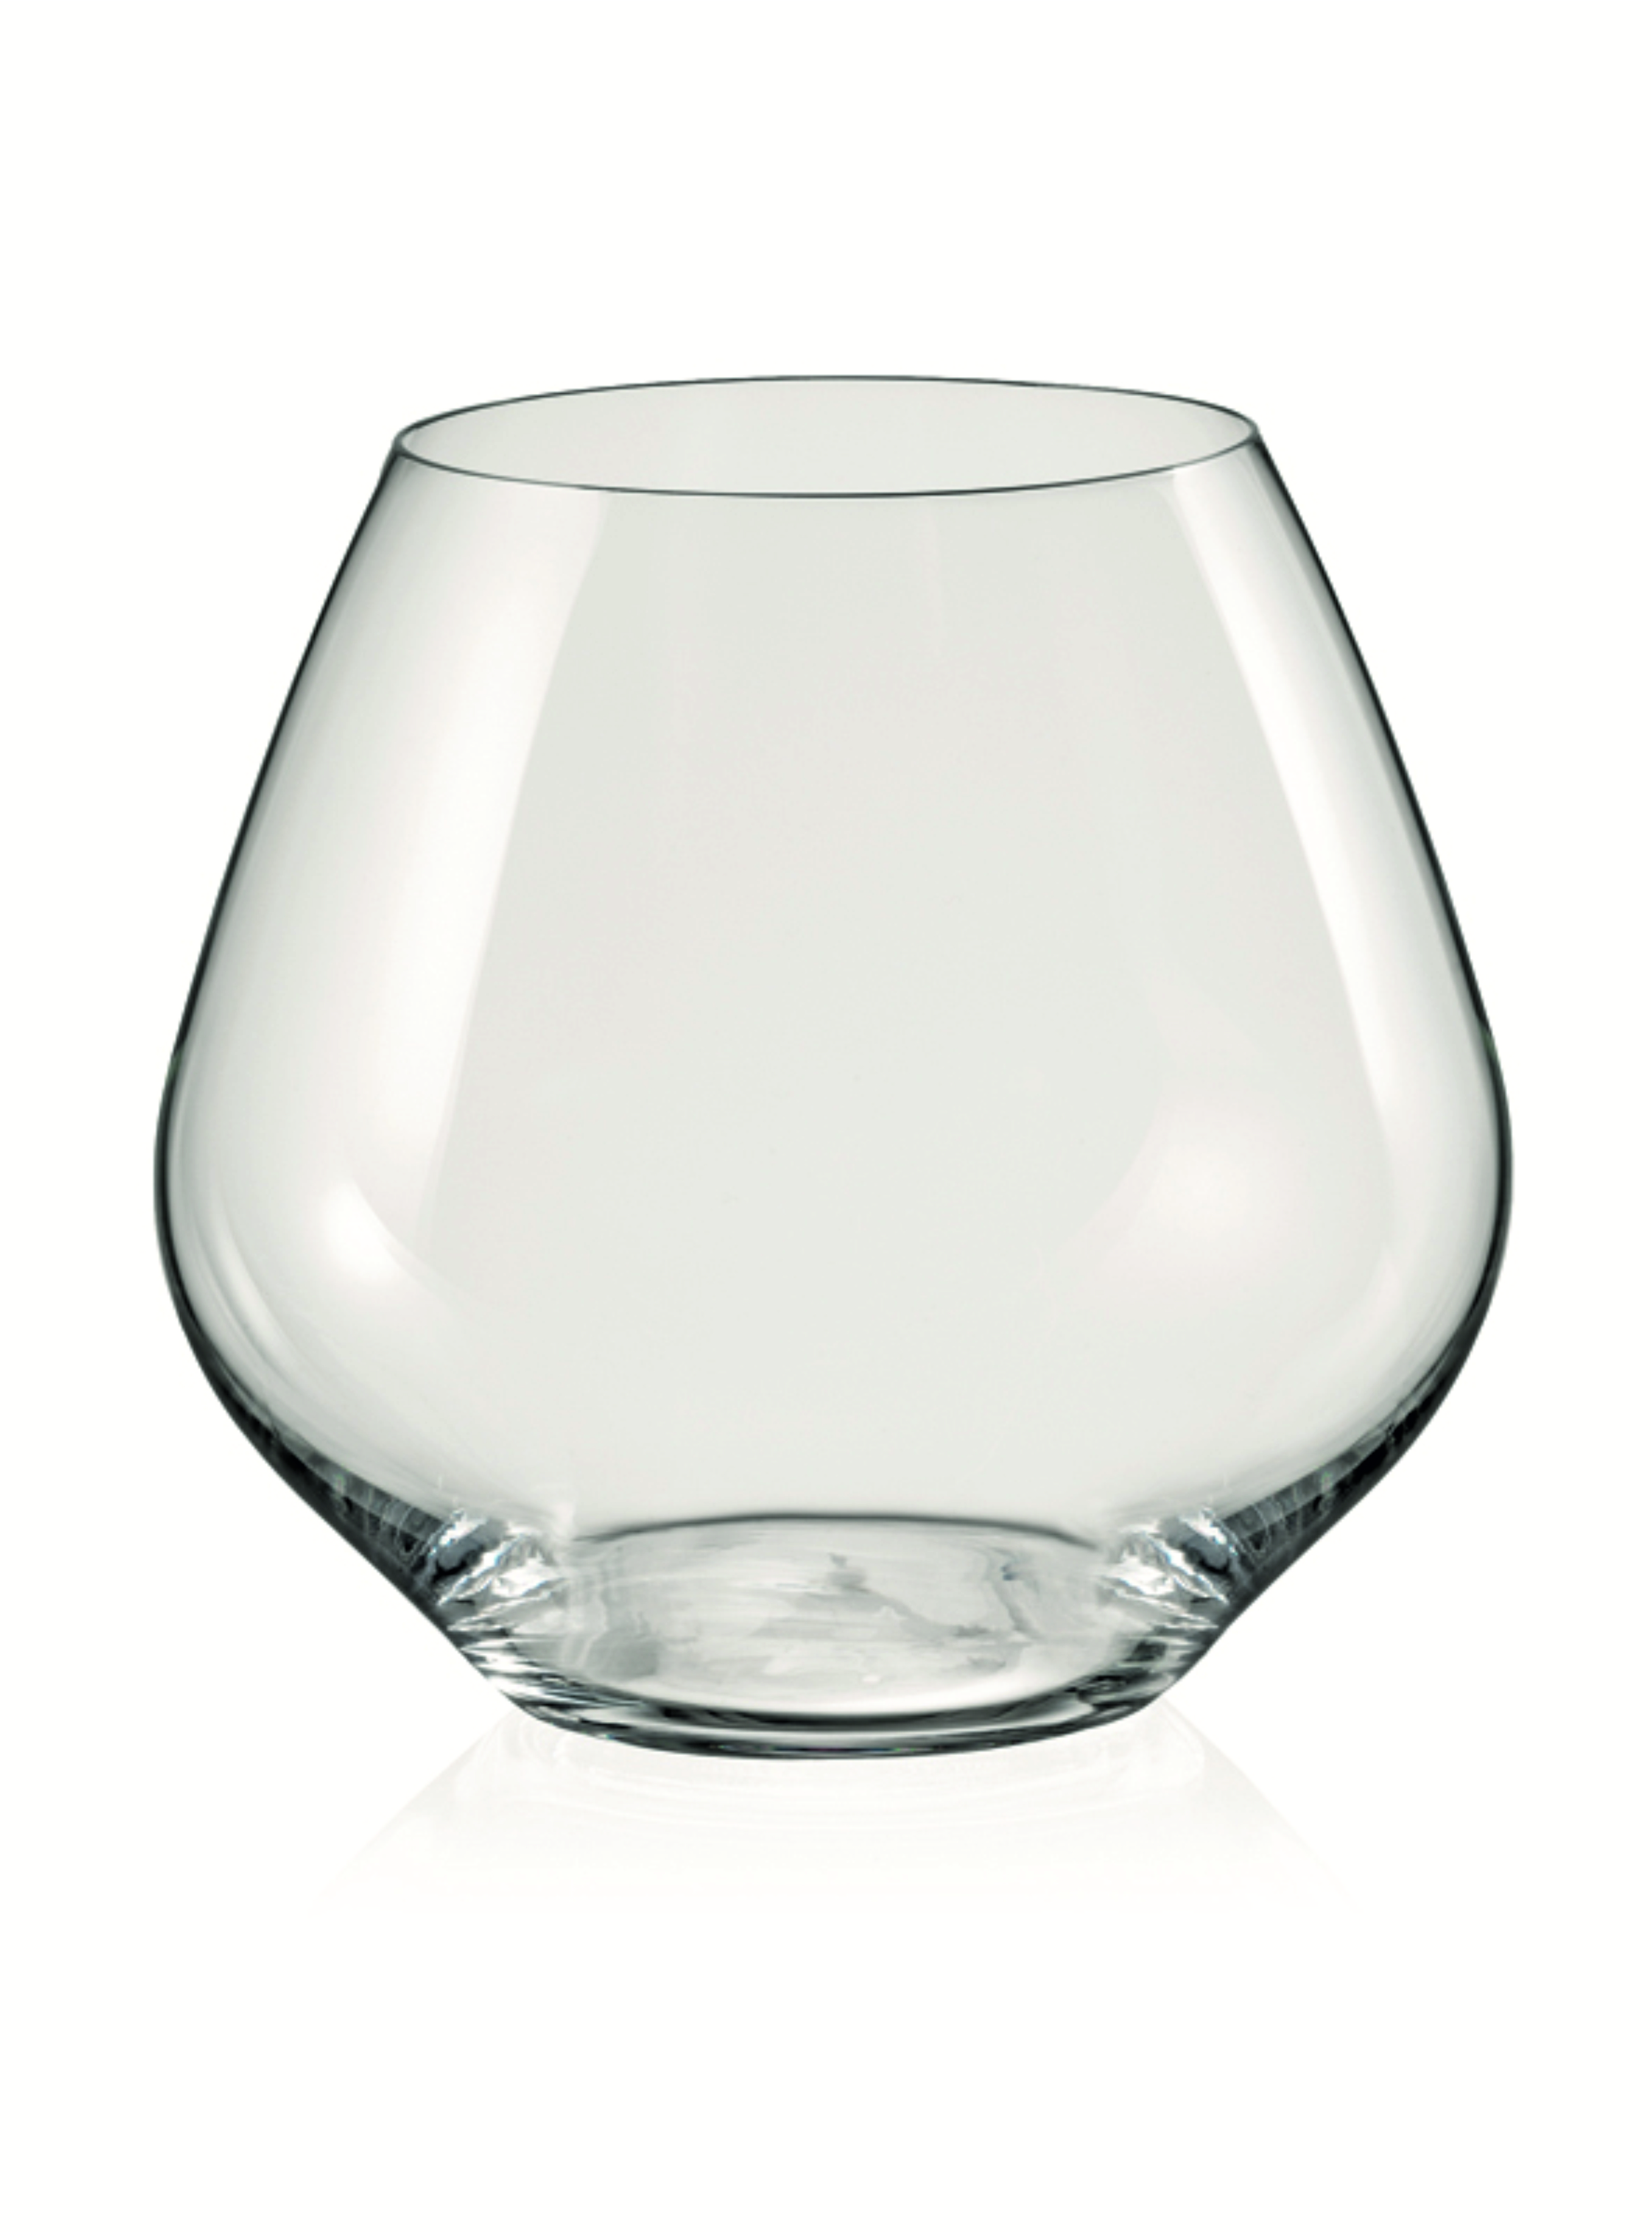 Аморосо стакан для виски 440 мл.(2шт) артикул 10537